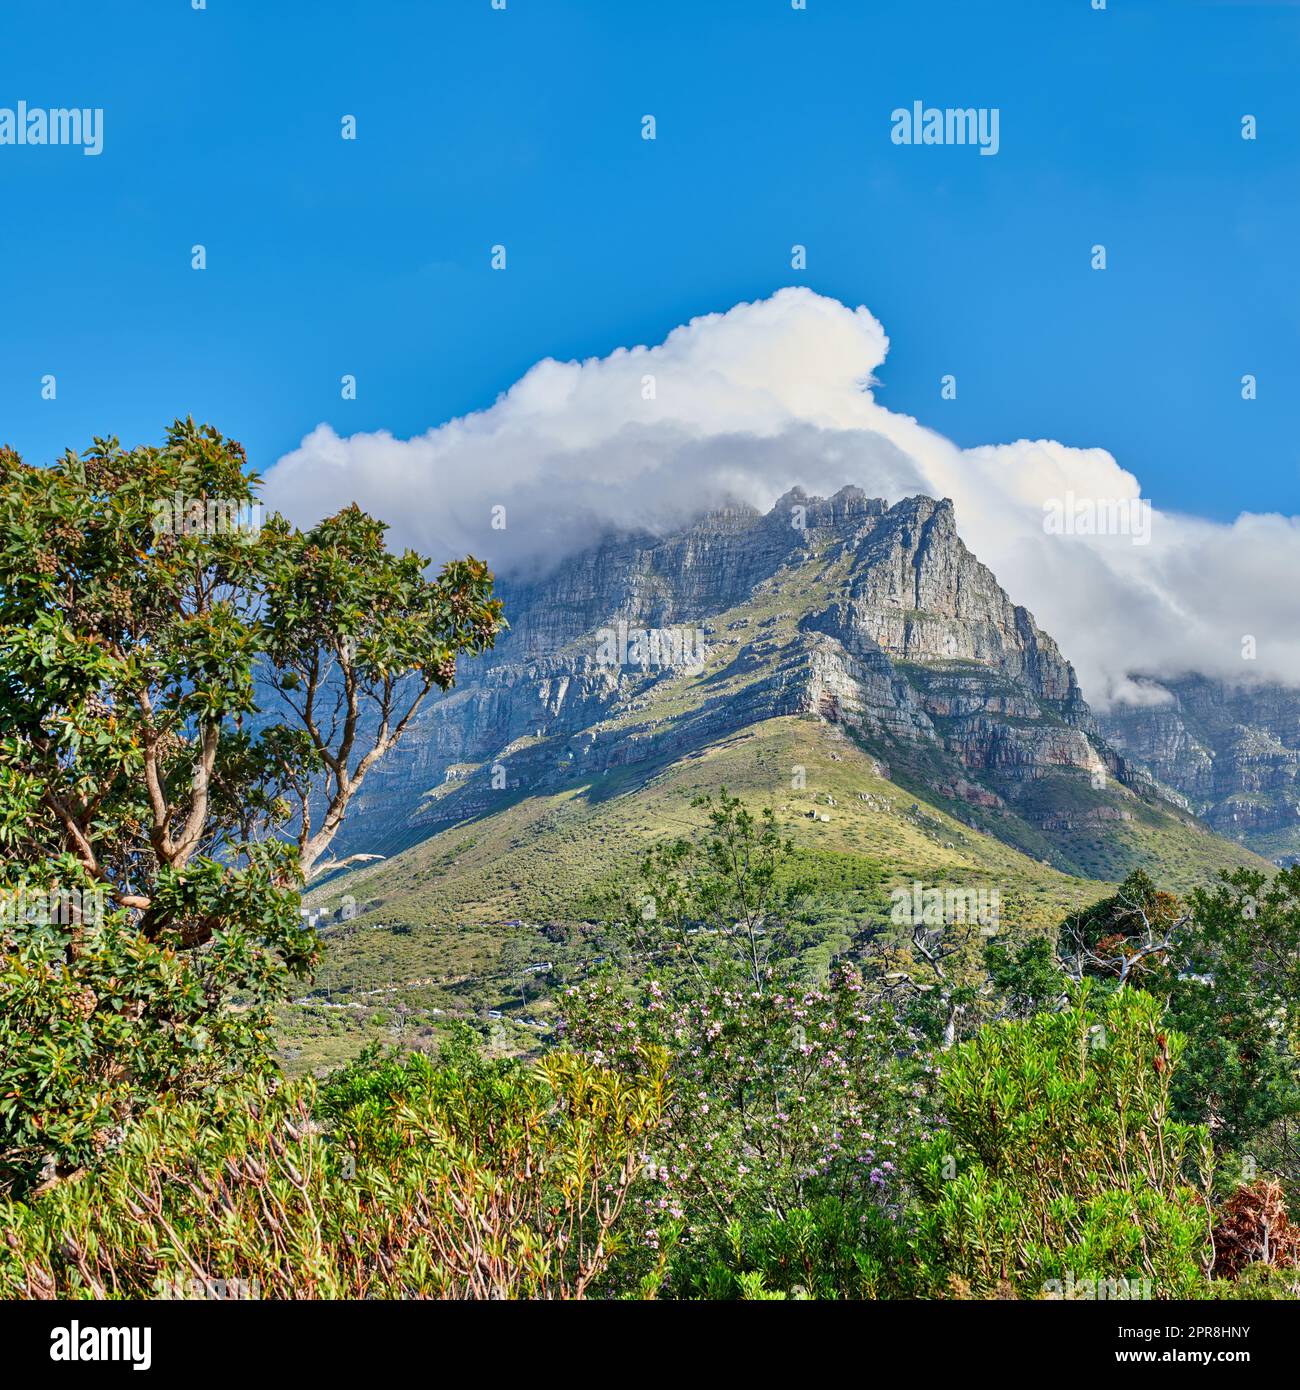 Friedliche Natur in Harmonie mit beruhigendem Blick auf Pflanzen und Landschaft. Dicke Wolken bedecken den Tafelberg in Kapstadt an einem sonnigen Tag. Wolkenformen und Schatten über felsigem Gelände Stockfoto